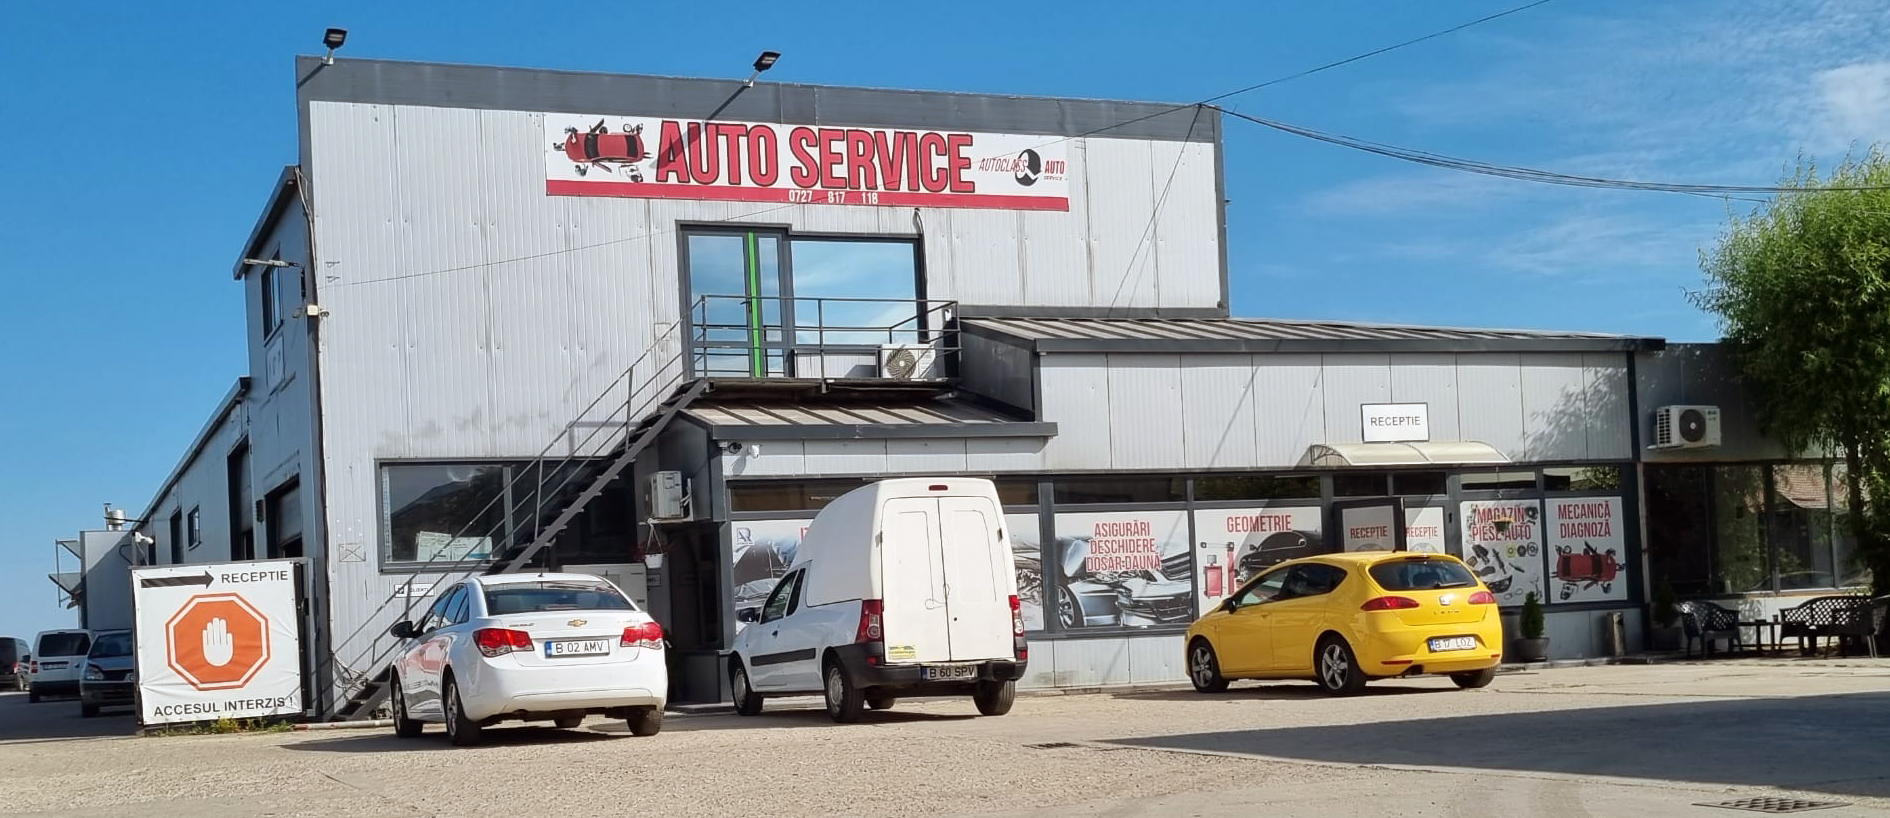 Uniclass Auto Service – Constatari daune auto / service